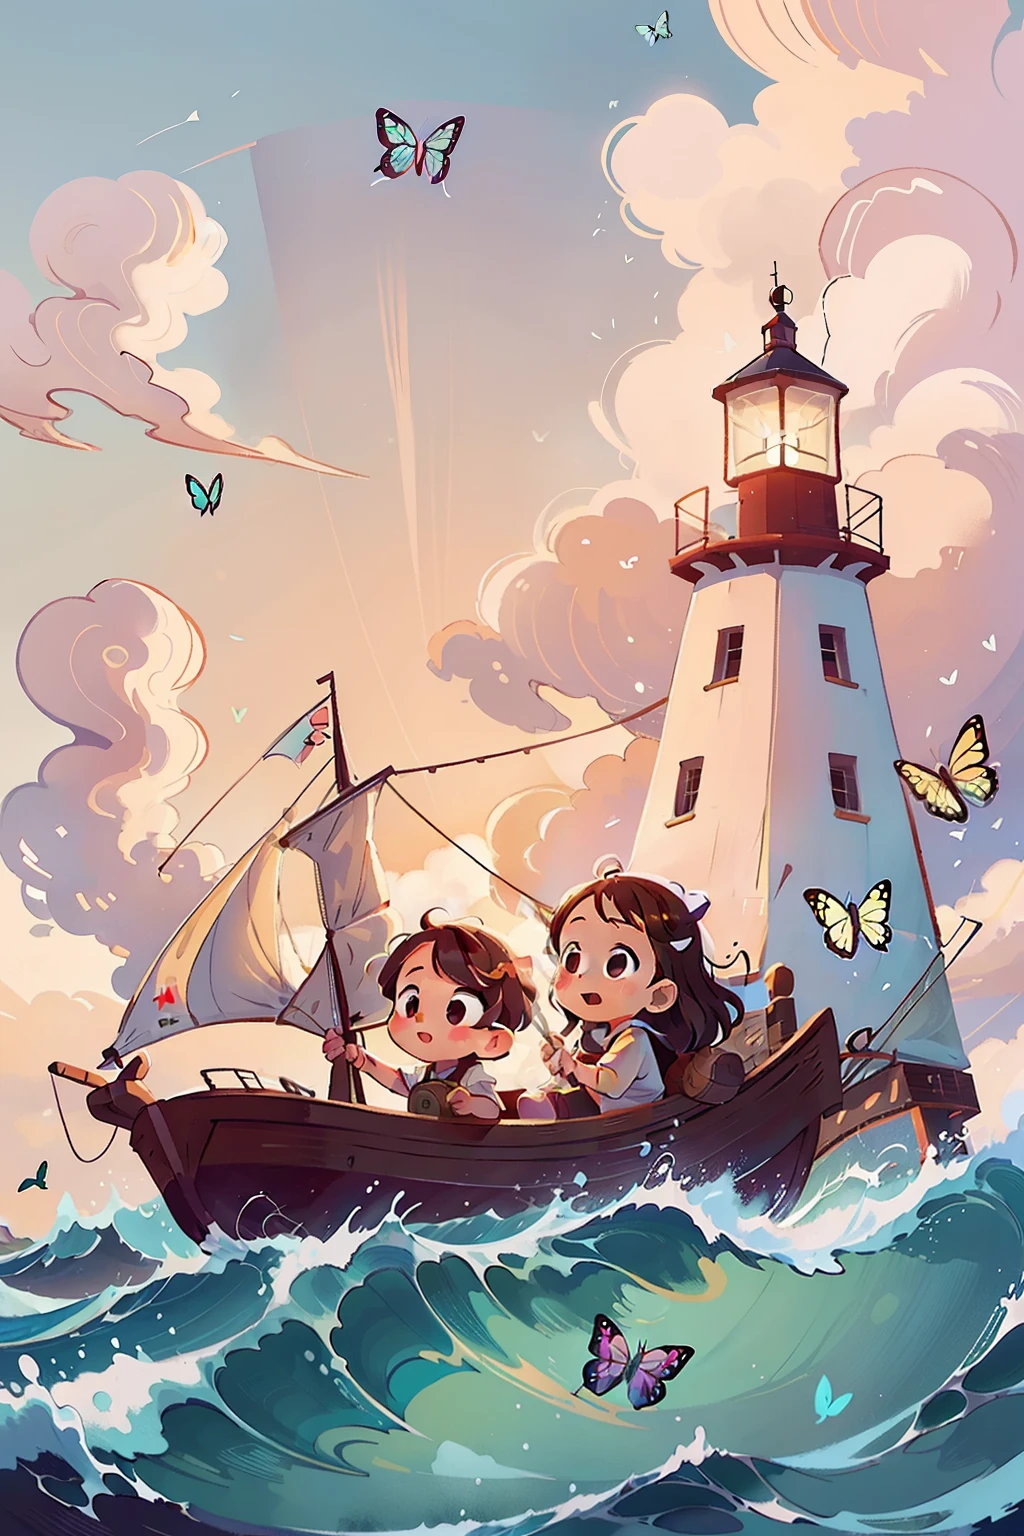 生成两个非常年轻的女孩在船上航行的图像, 波浪, 海, 天空與白雲. 七彩蝴蝶, 背景中的灯塔,